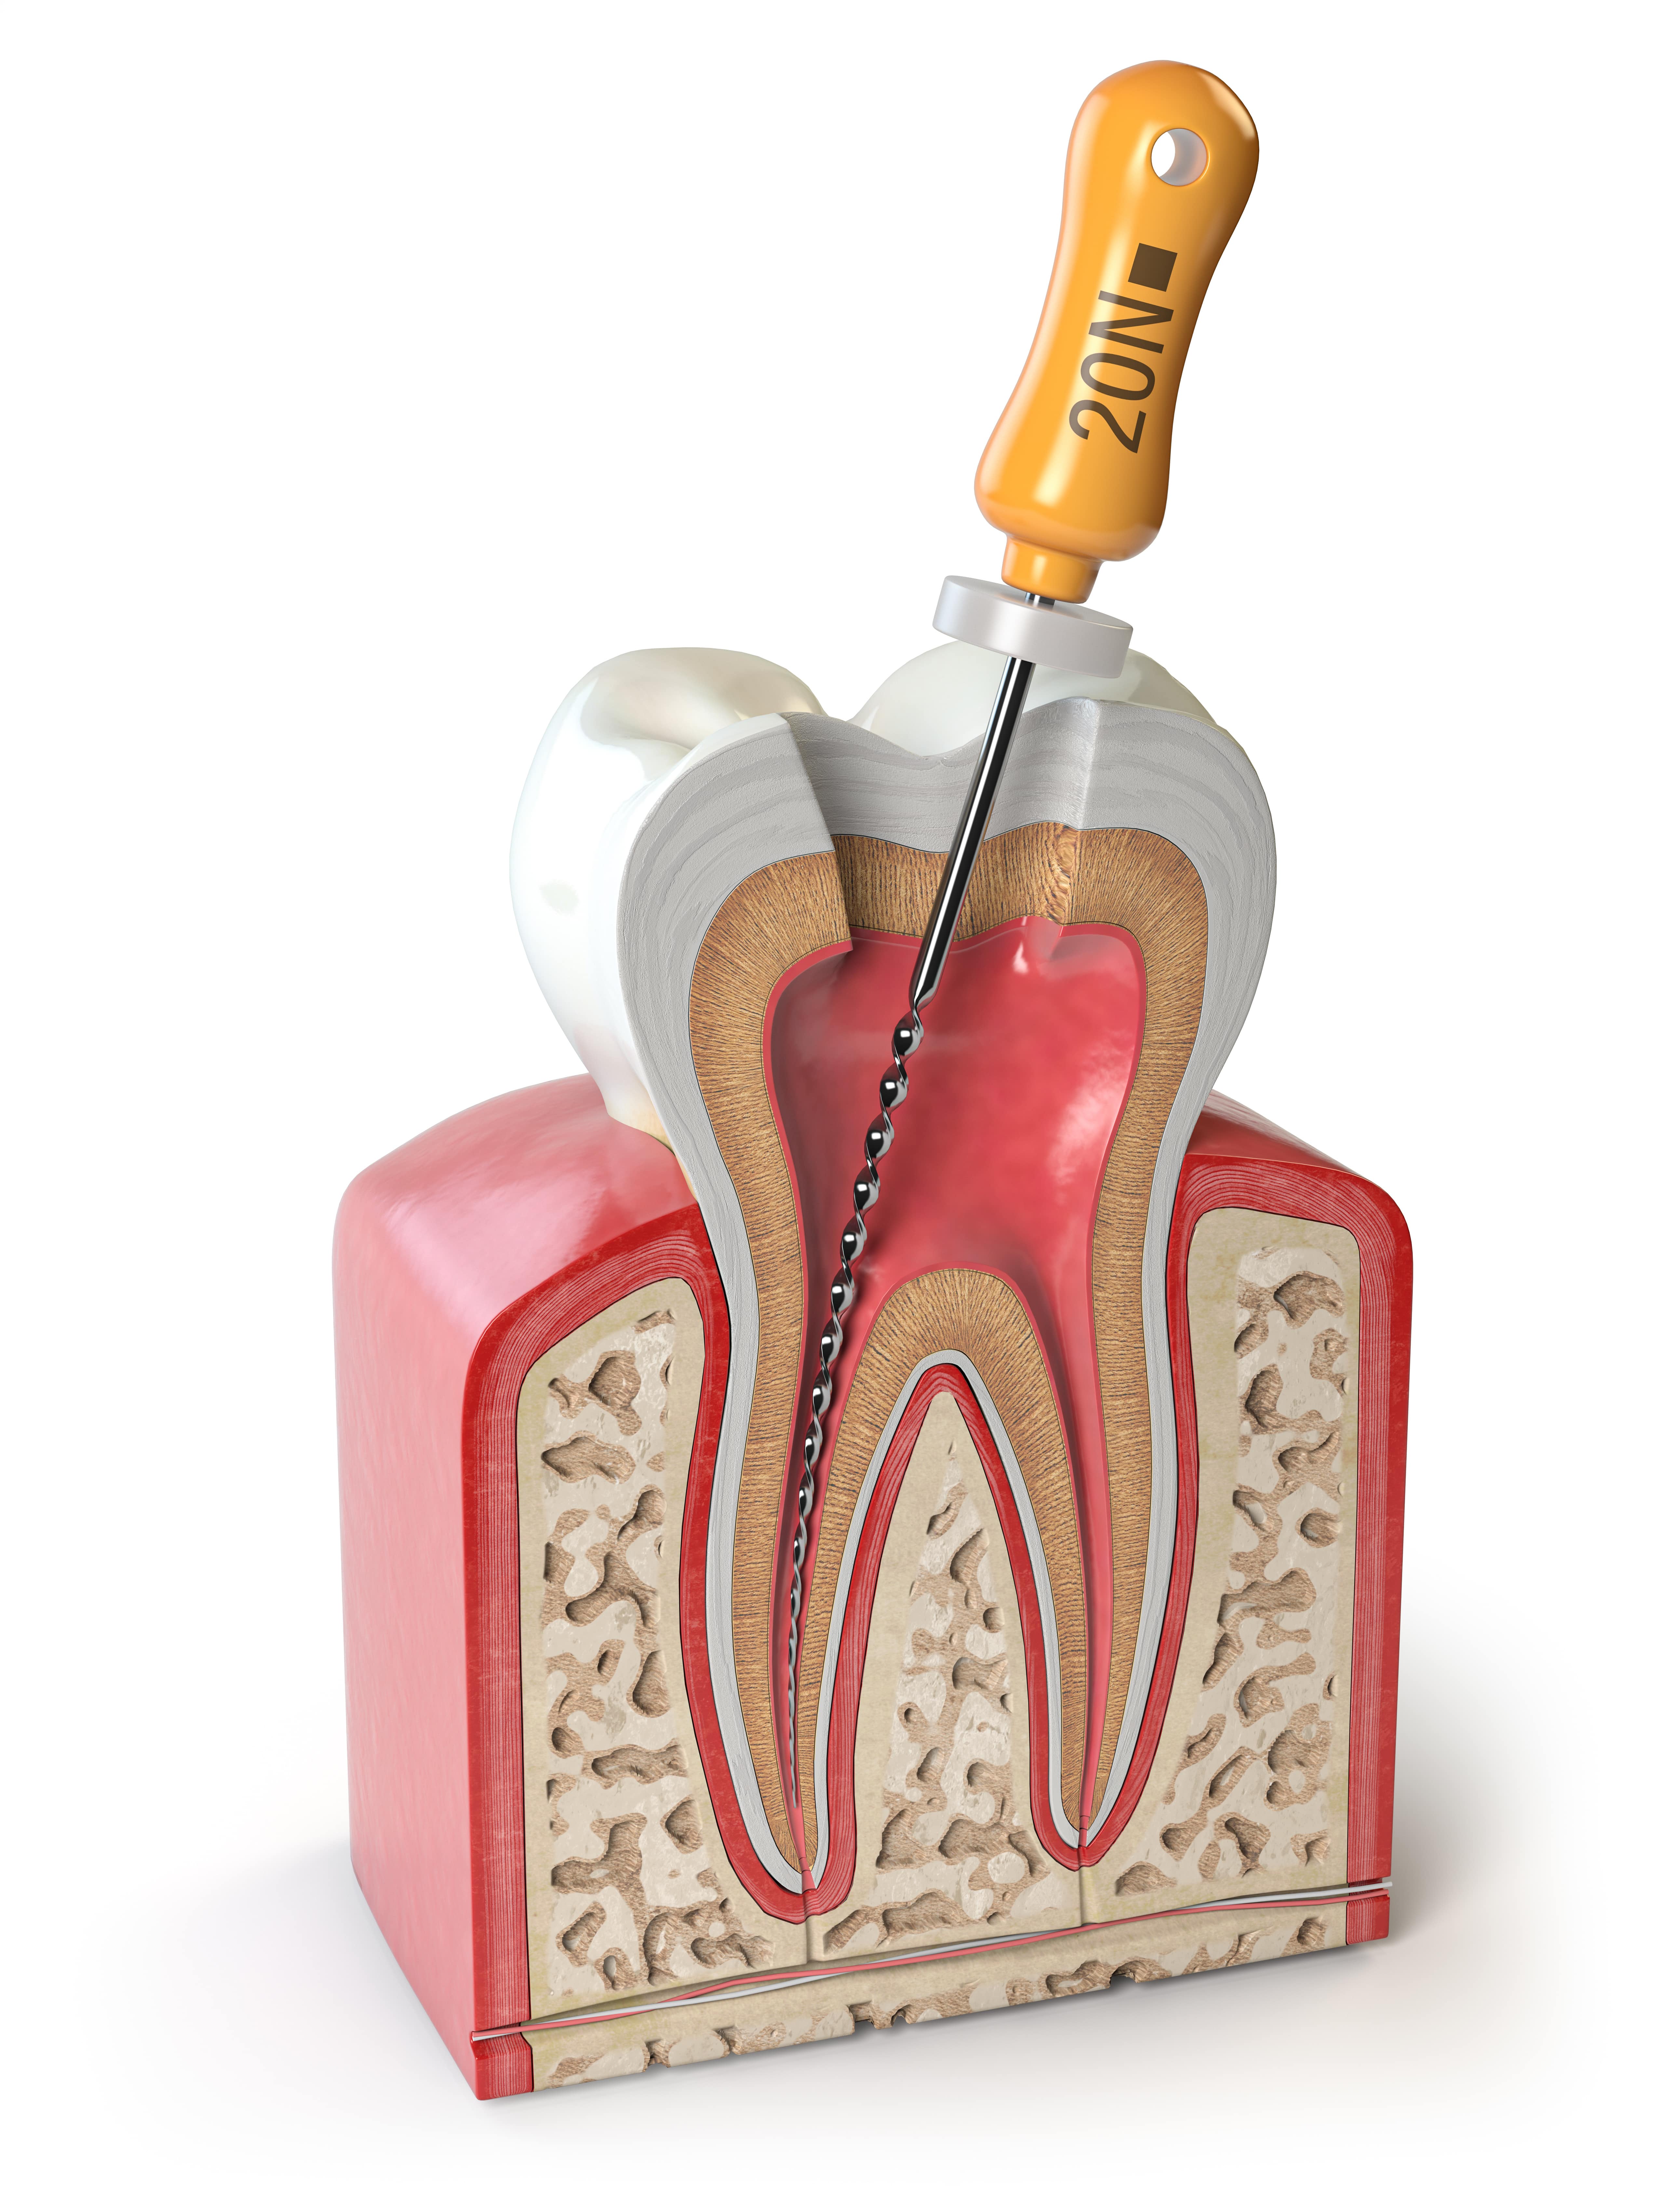 Картинка зуба с файлом эндодонтическим